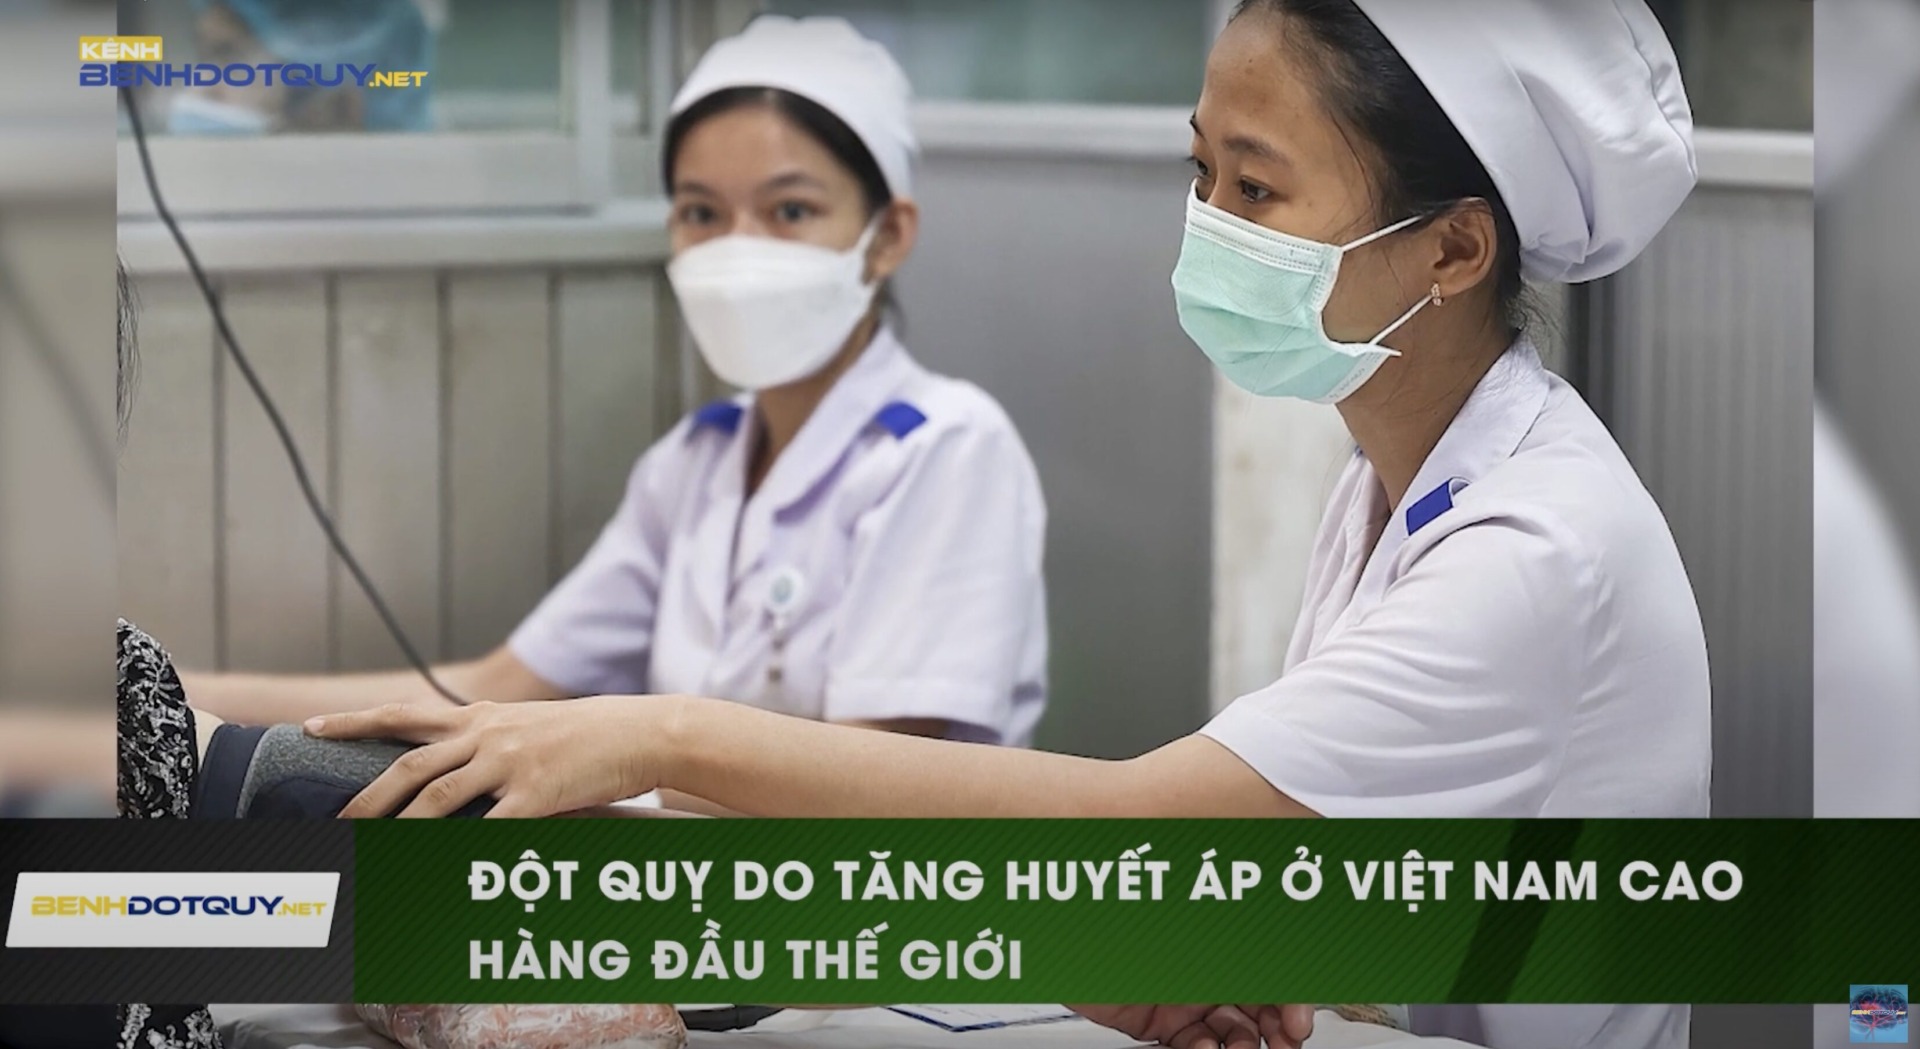 Chuyên gia cảnh báo tăng huyết áp ở Việt Nam cao hàng đầu Thế Giới